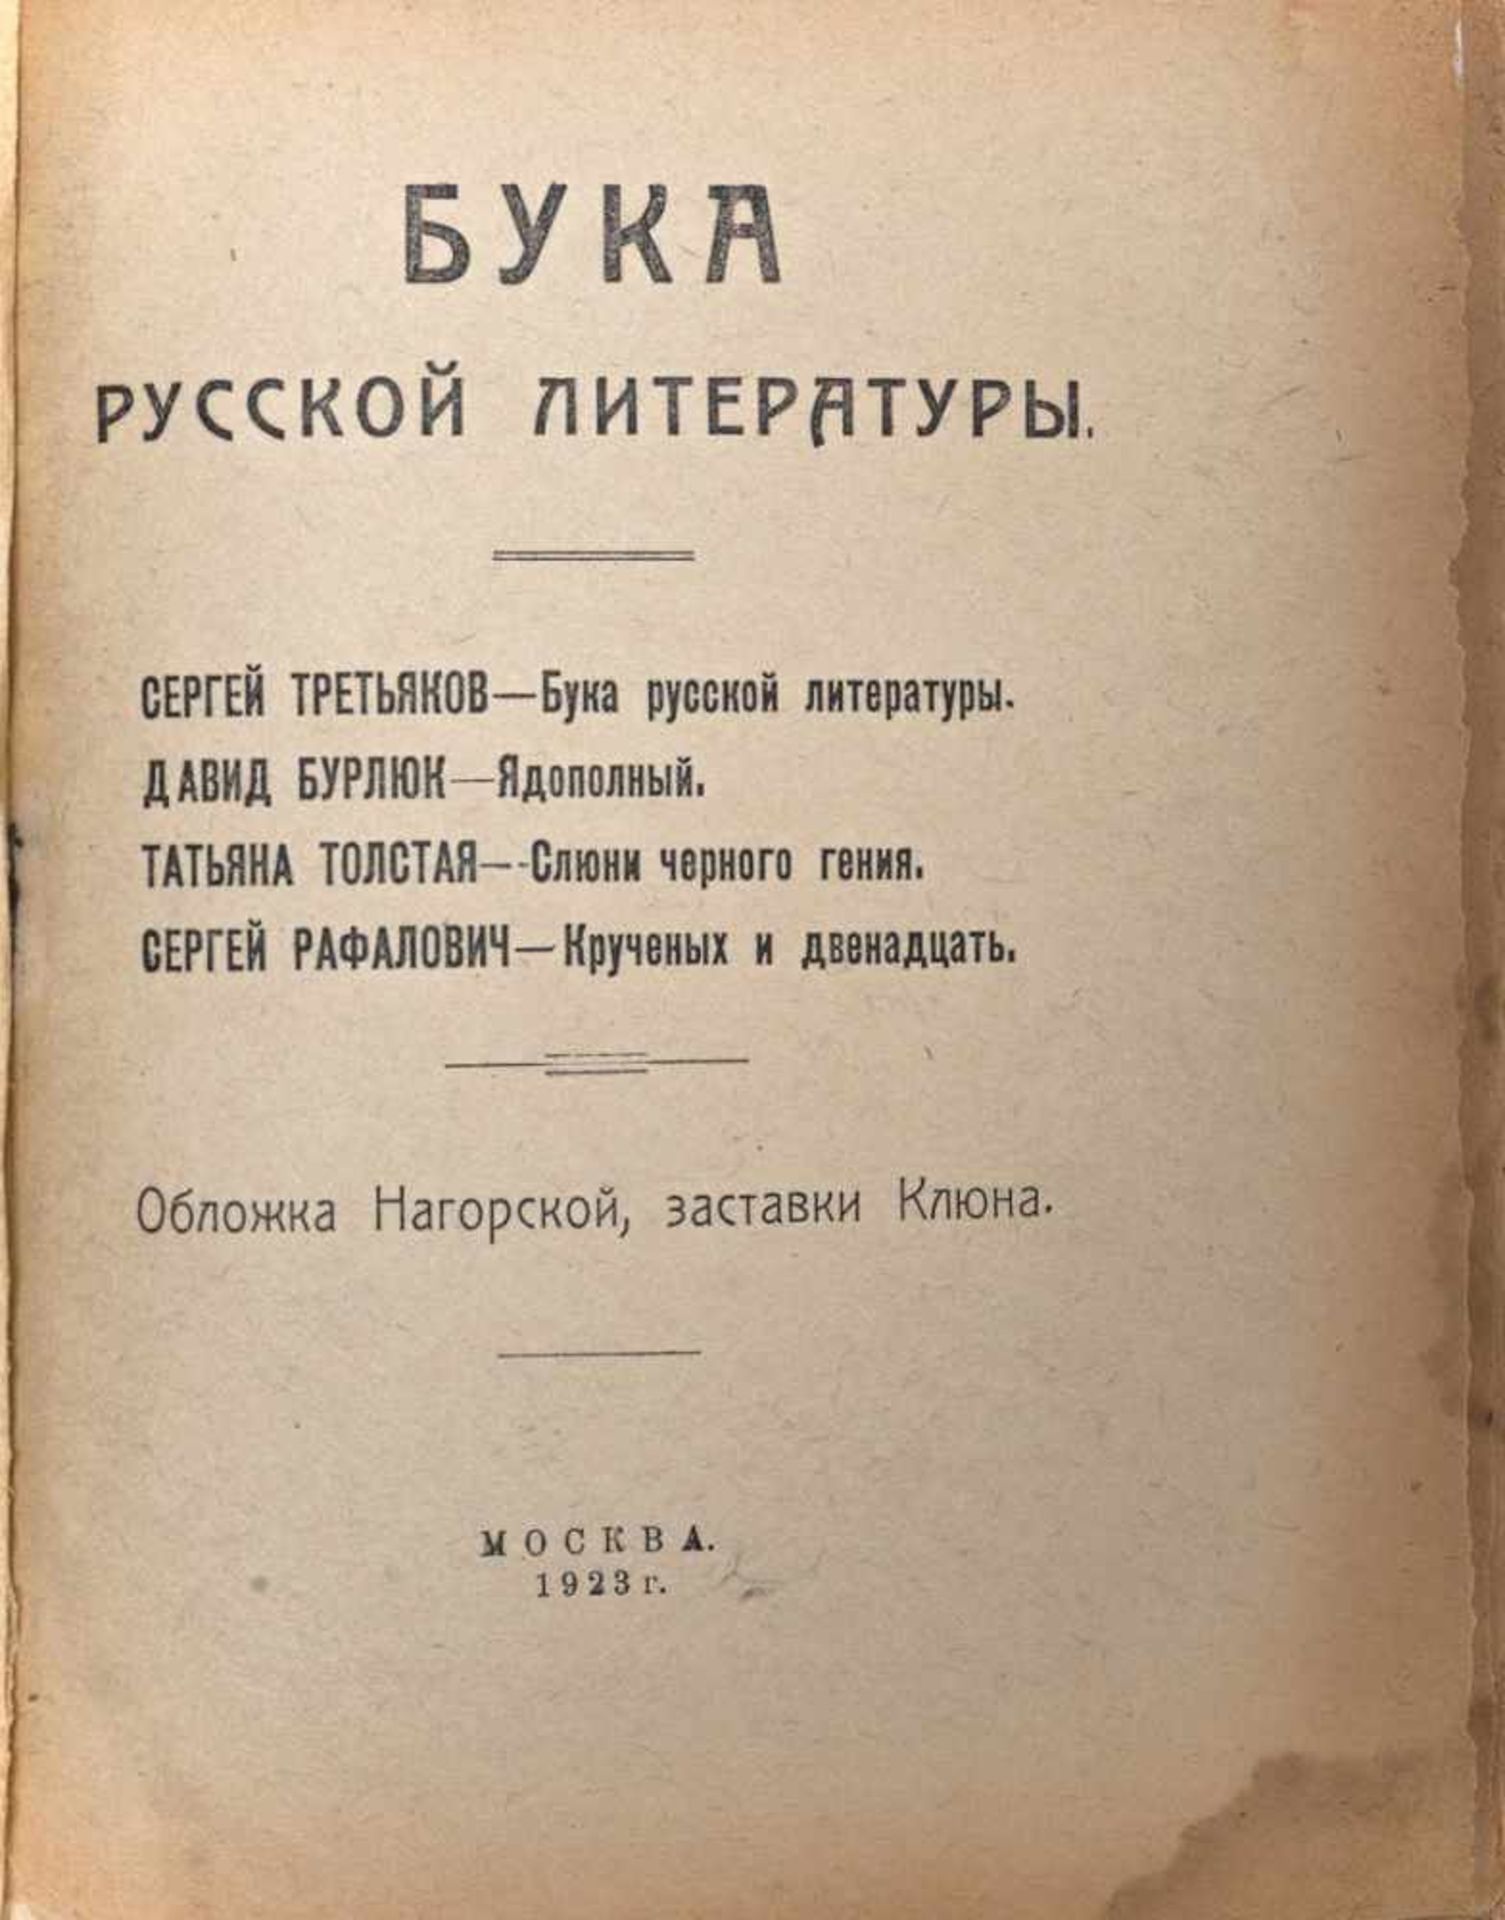 [Soviet art]. Russian literature' Buka [Bogeyman]: Collection of articles about Alexey Krukhchenylh. - Bild 2 aus 2